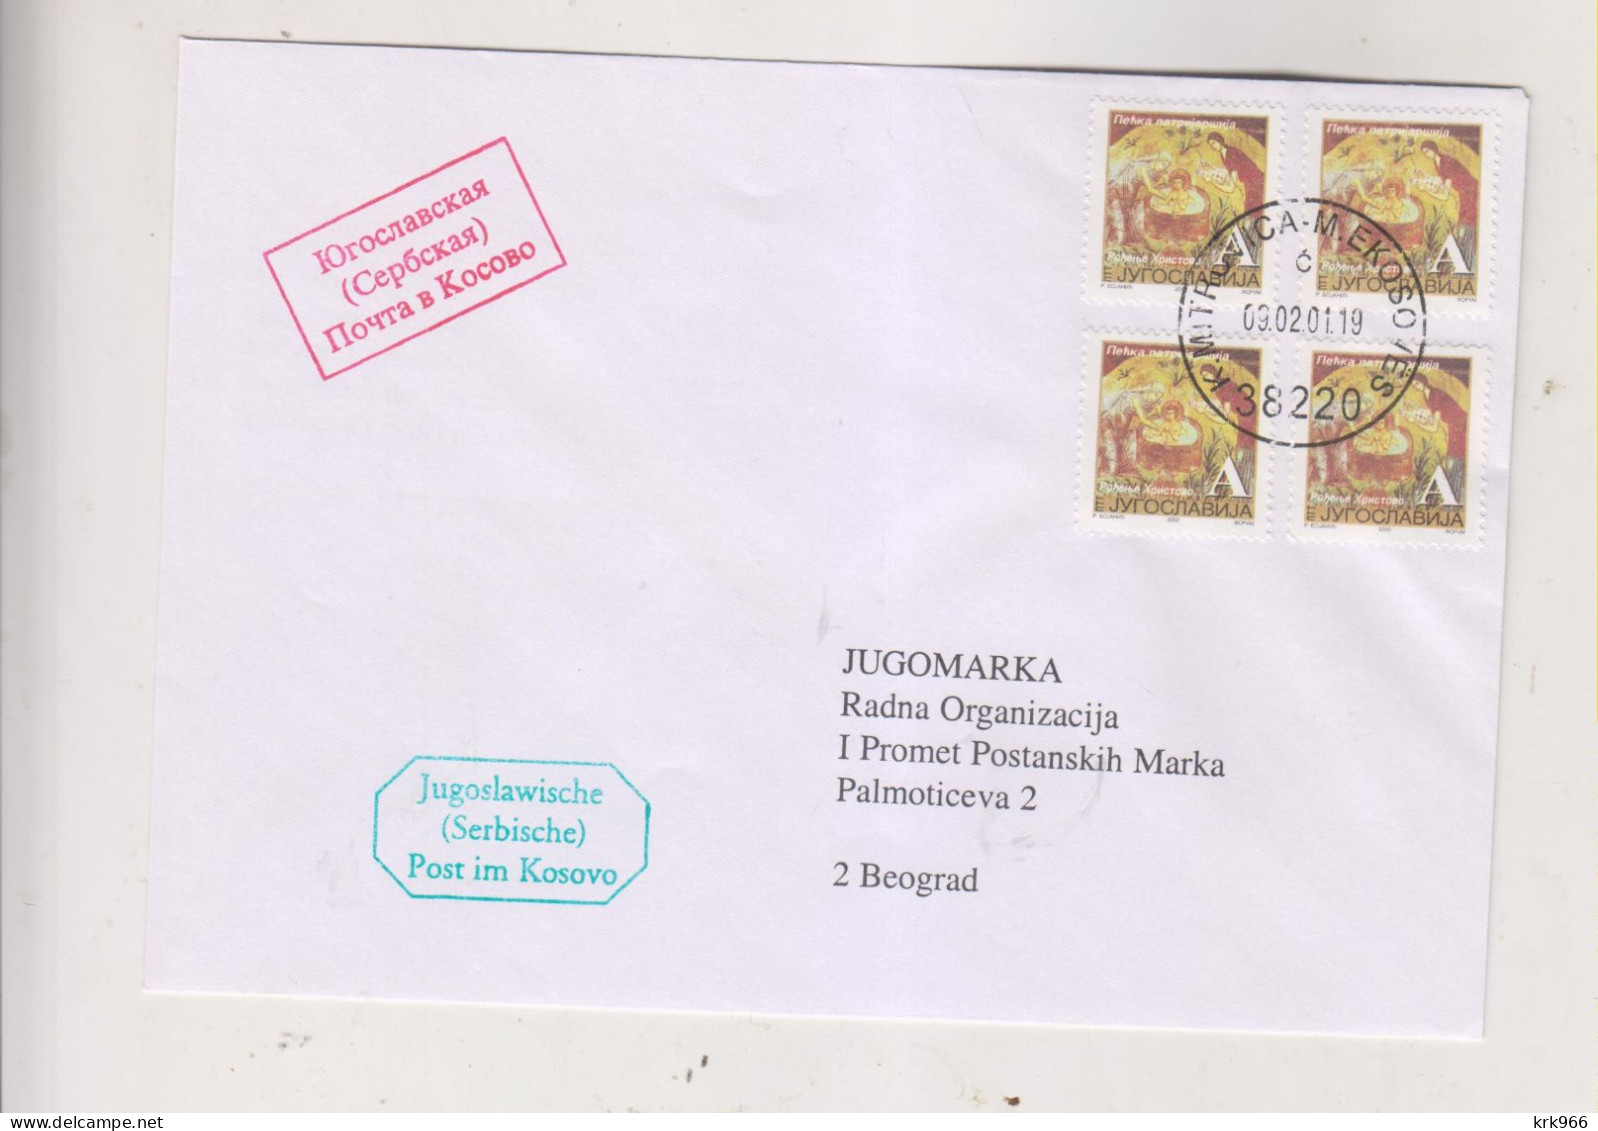 YUGOSLAVIA,2001 KOSOVO KOSOVSKA MITROVICA SERBIAN POST Nice Cover - Cartas & Documentos